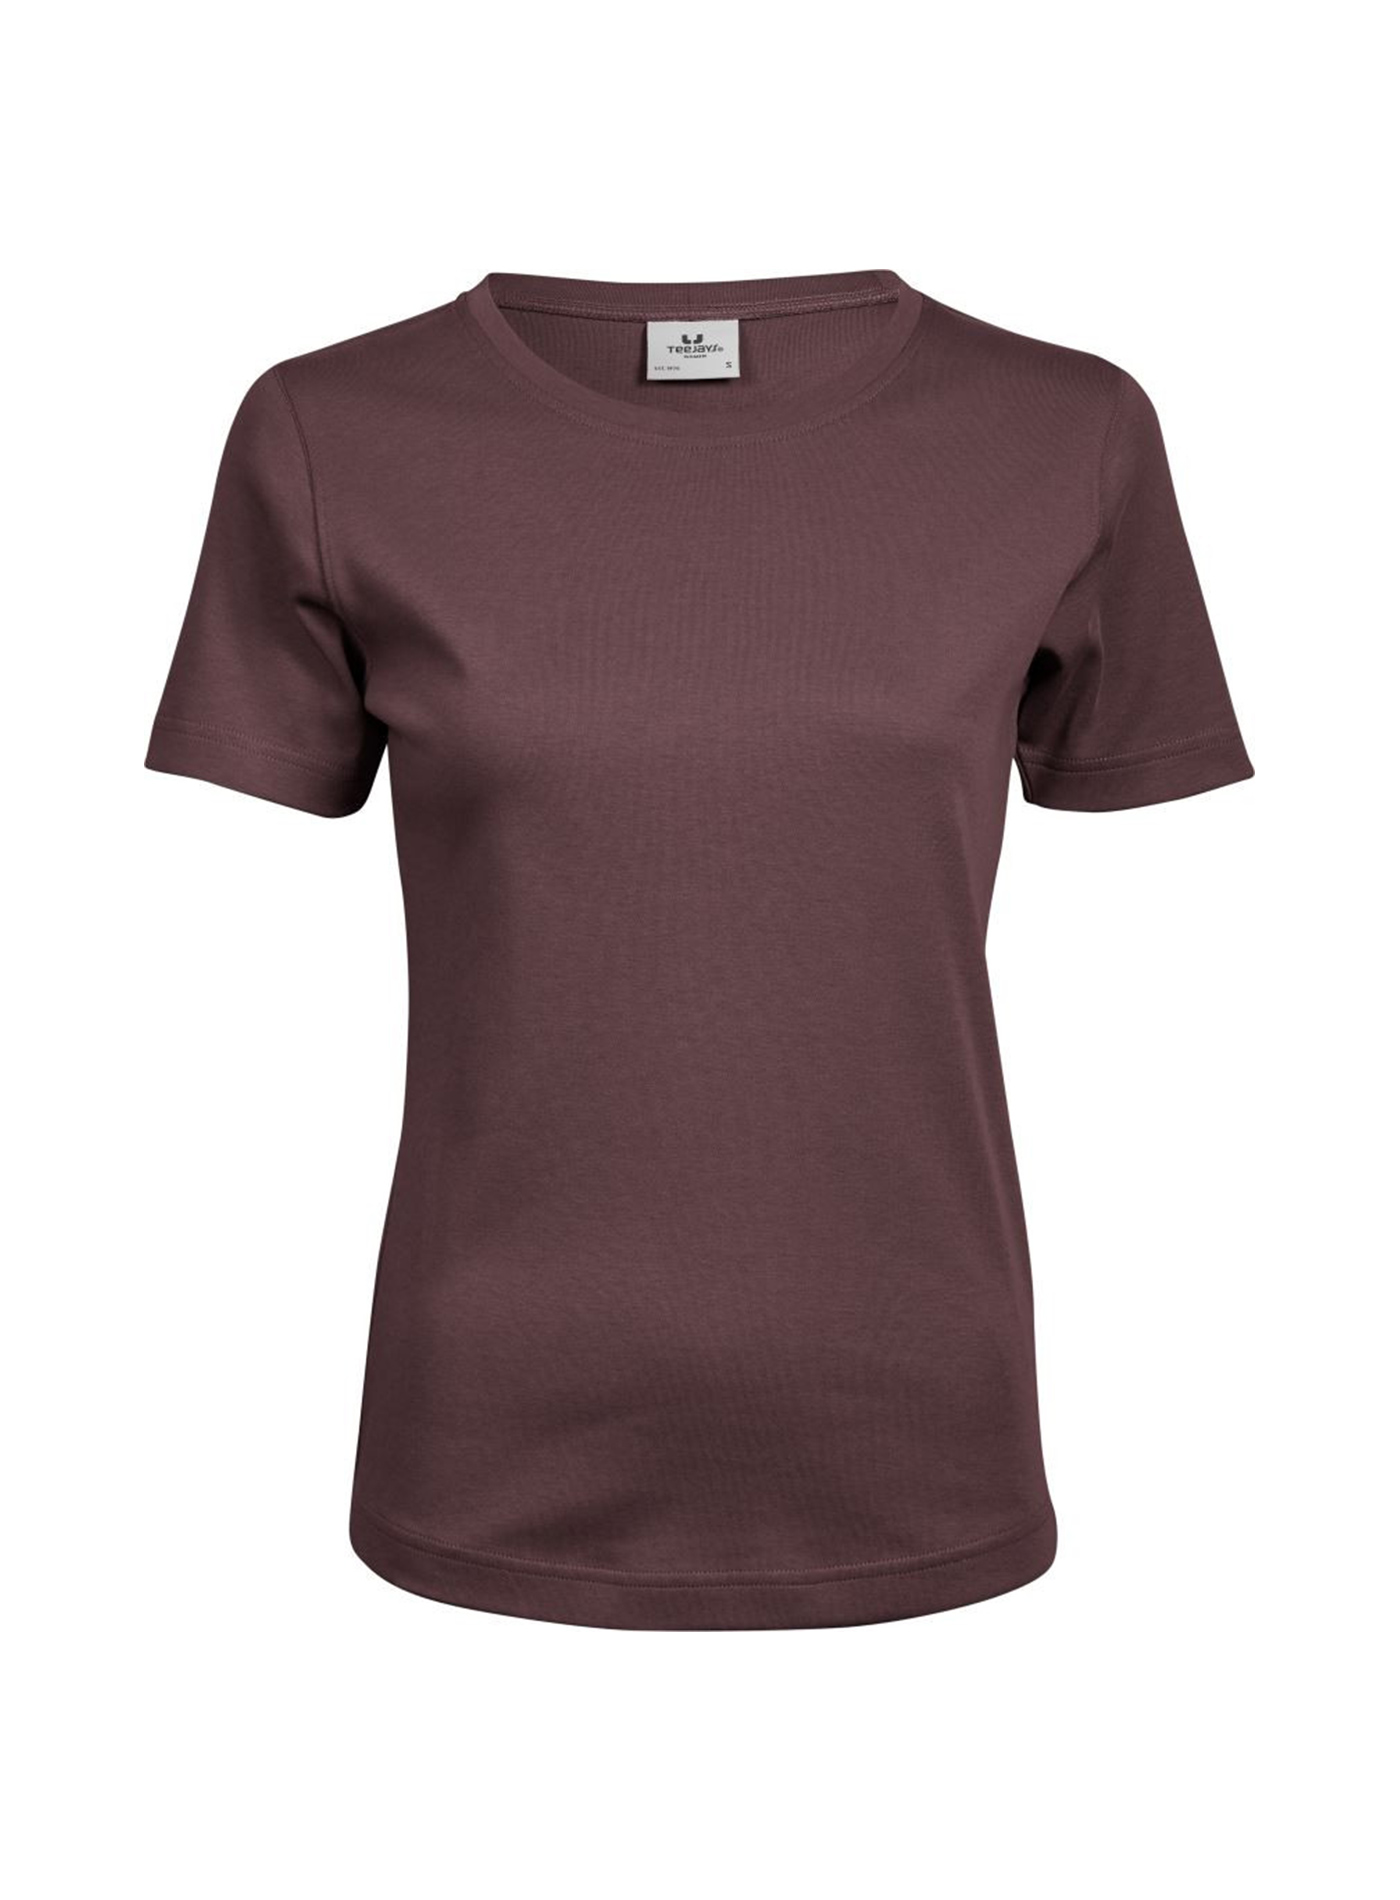 Silné bavlněné tričko Tee Jays Interlock - Hnědočervená M